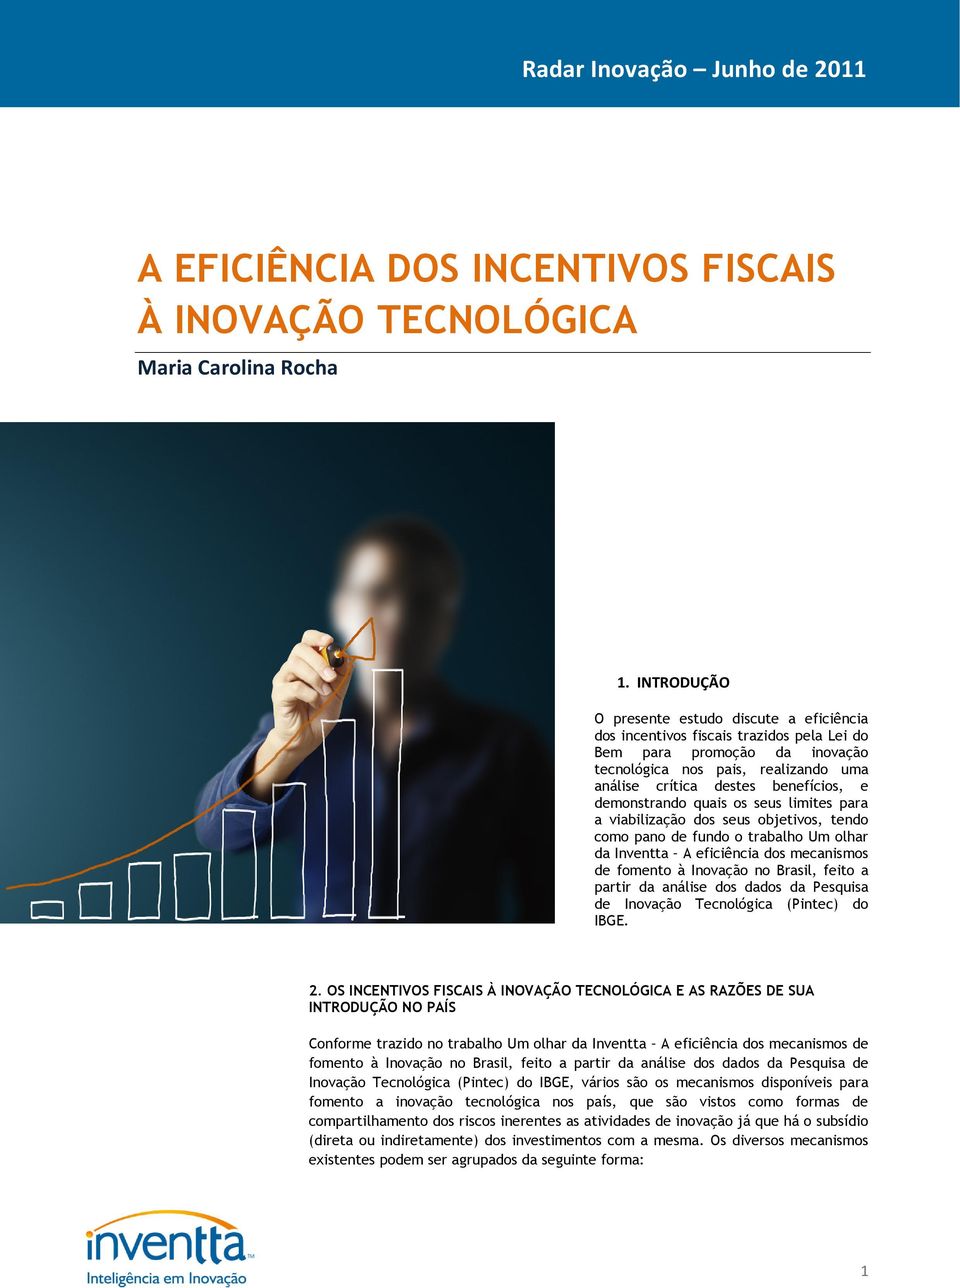 demonstrando quais os seus limites para a viabilização dos seus objetivos, tendo como pano de fundo o trabalho Um olhar da Inventta A eficiência dos mecanismos de fomento à Inovação no Brasil, feito